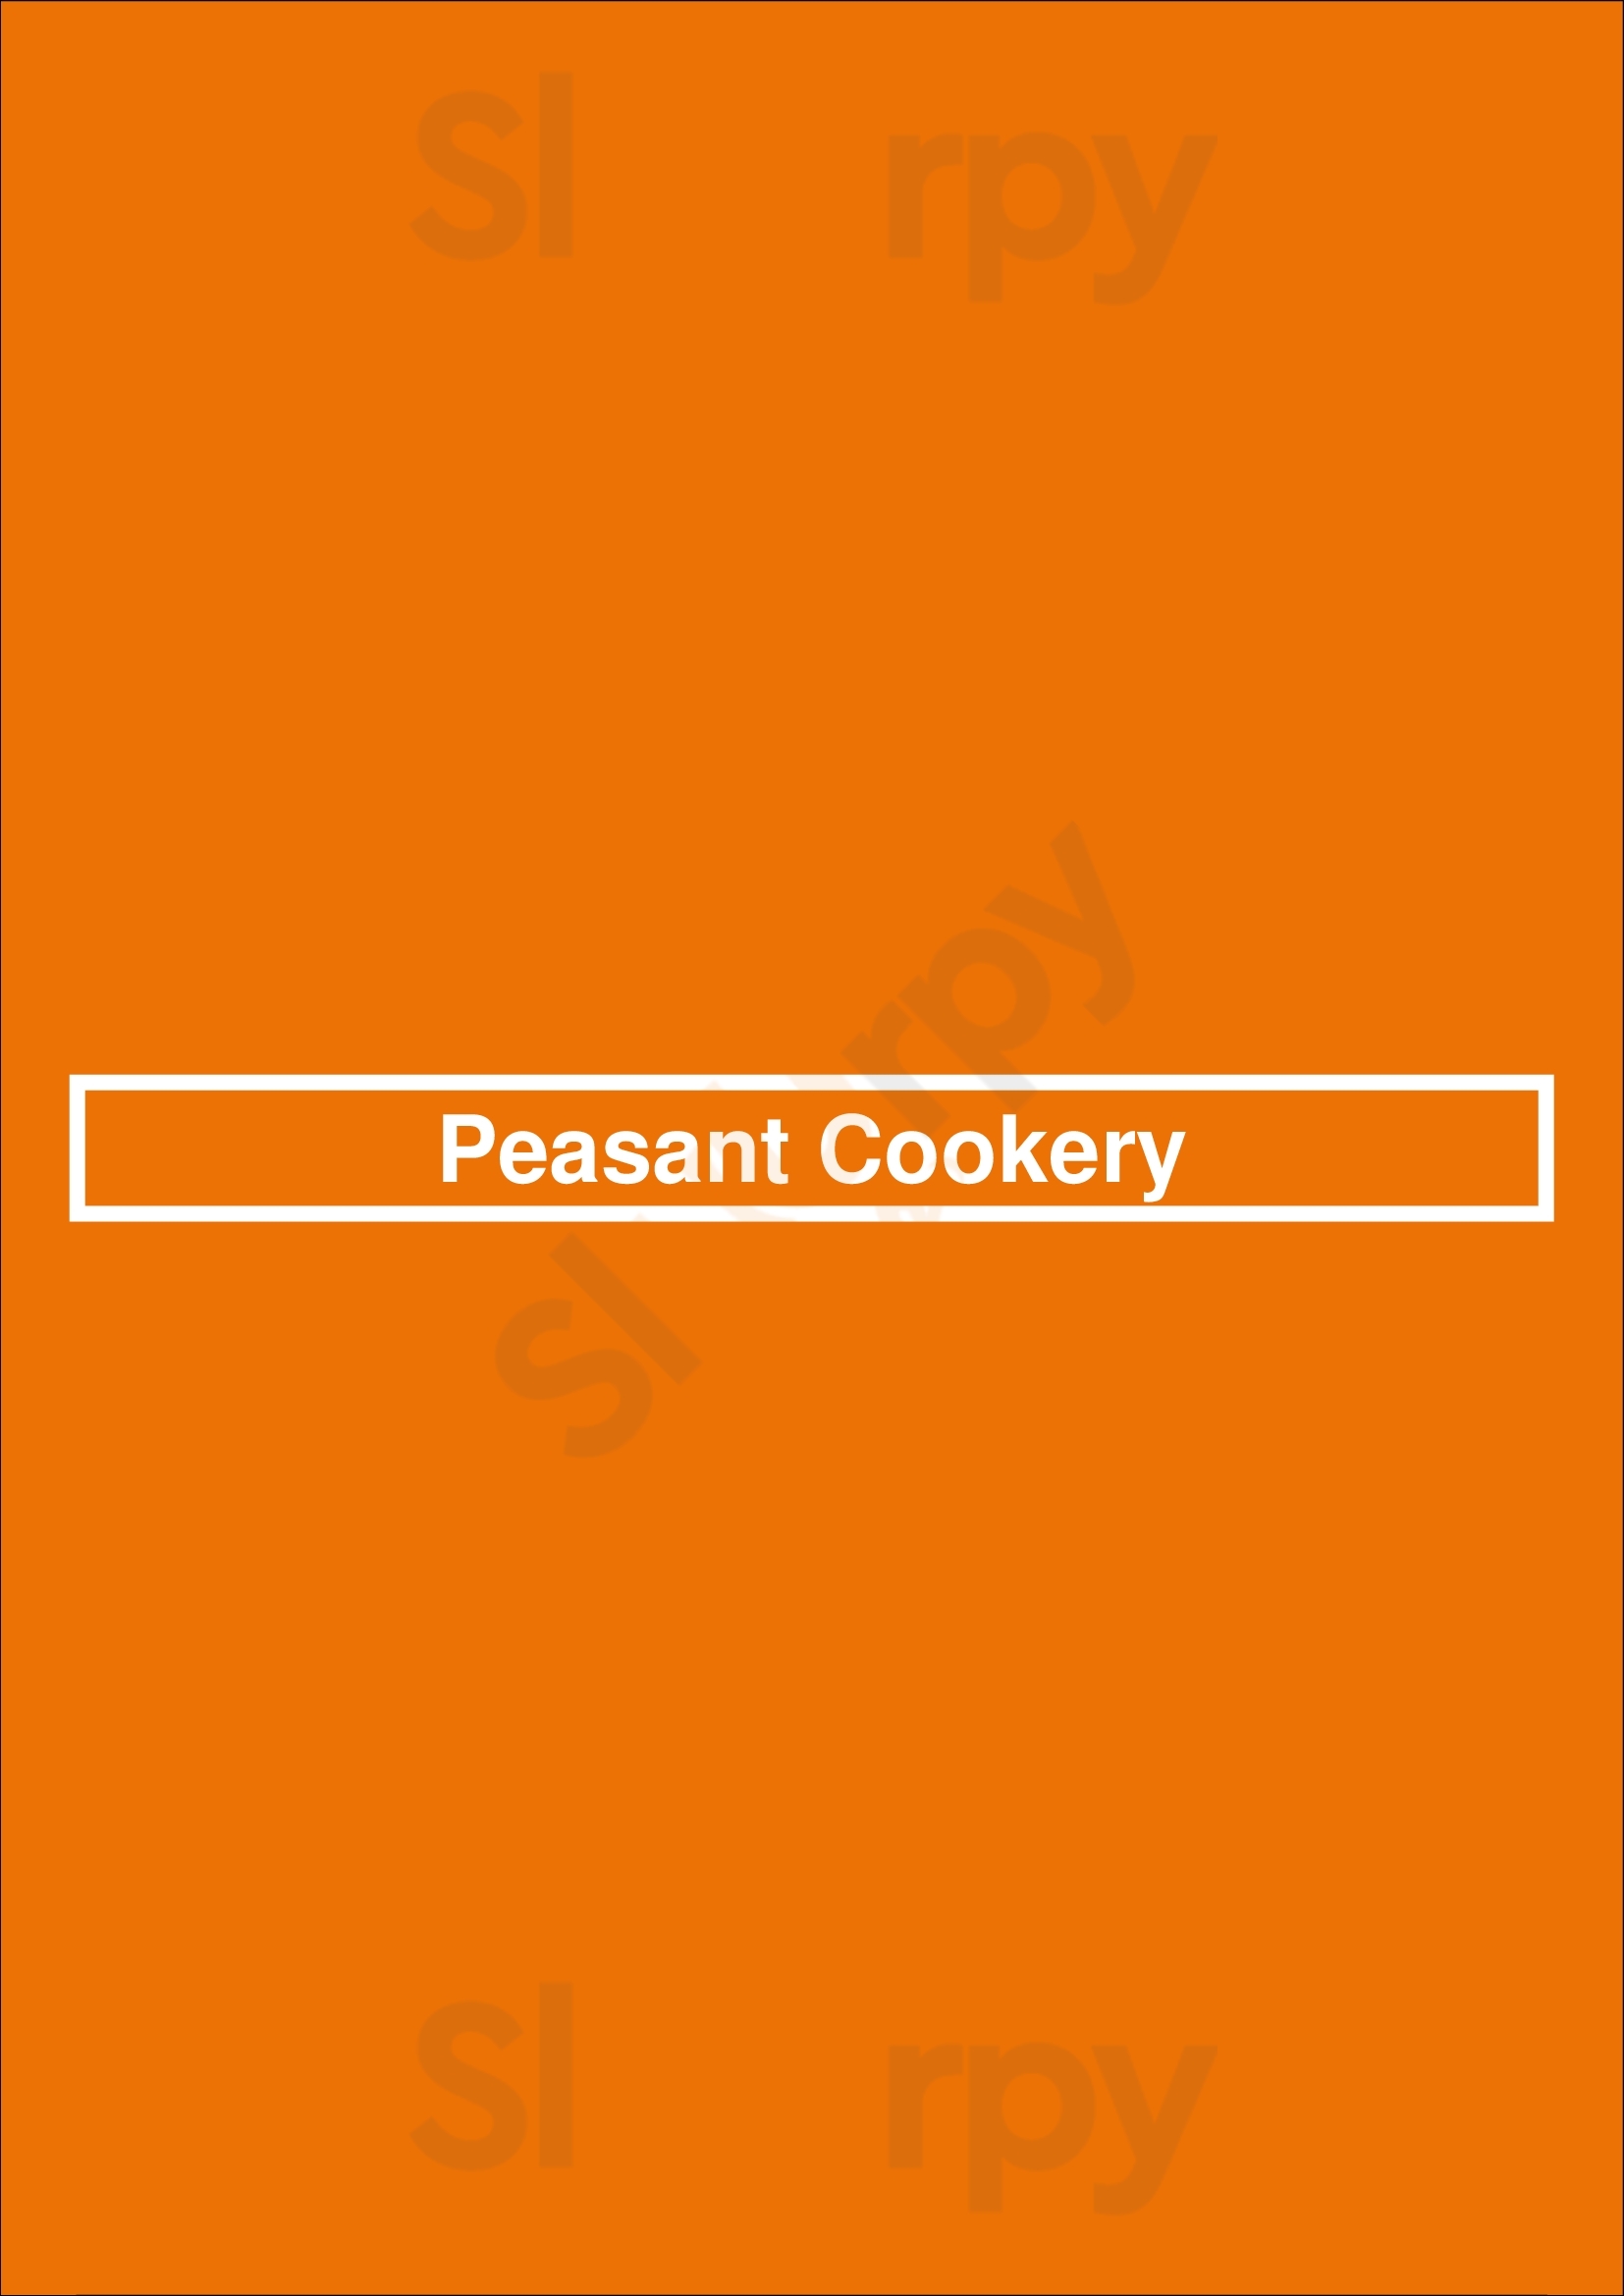 Peasant Cookery Winnipeg Menu - 1